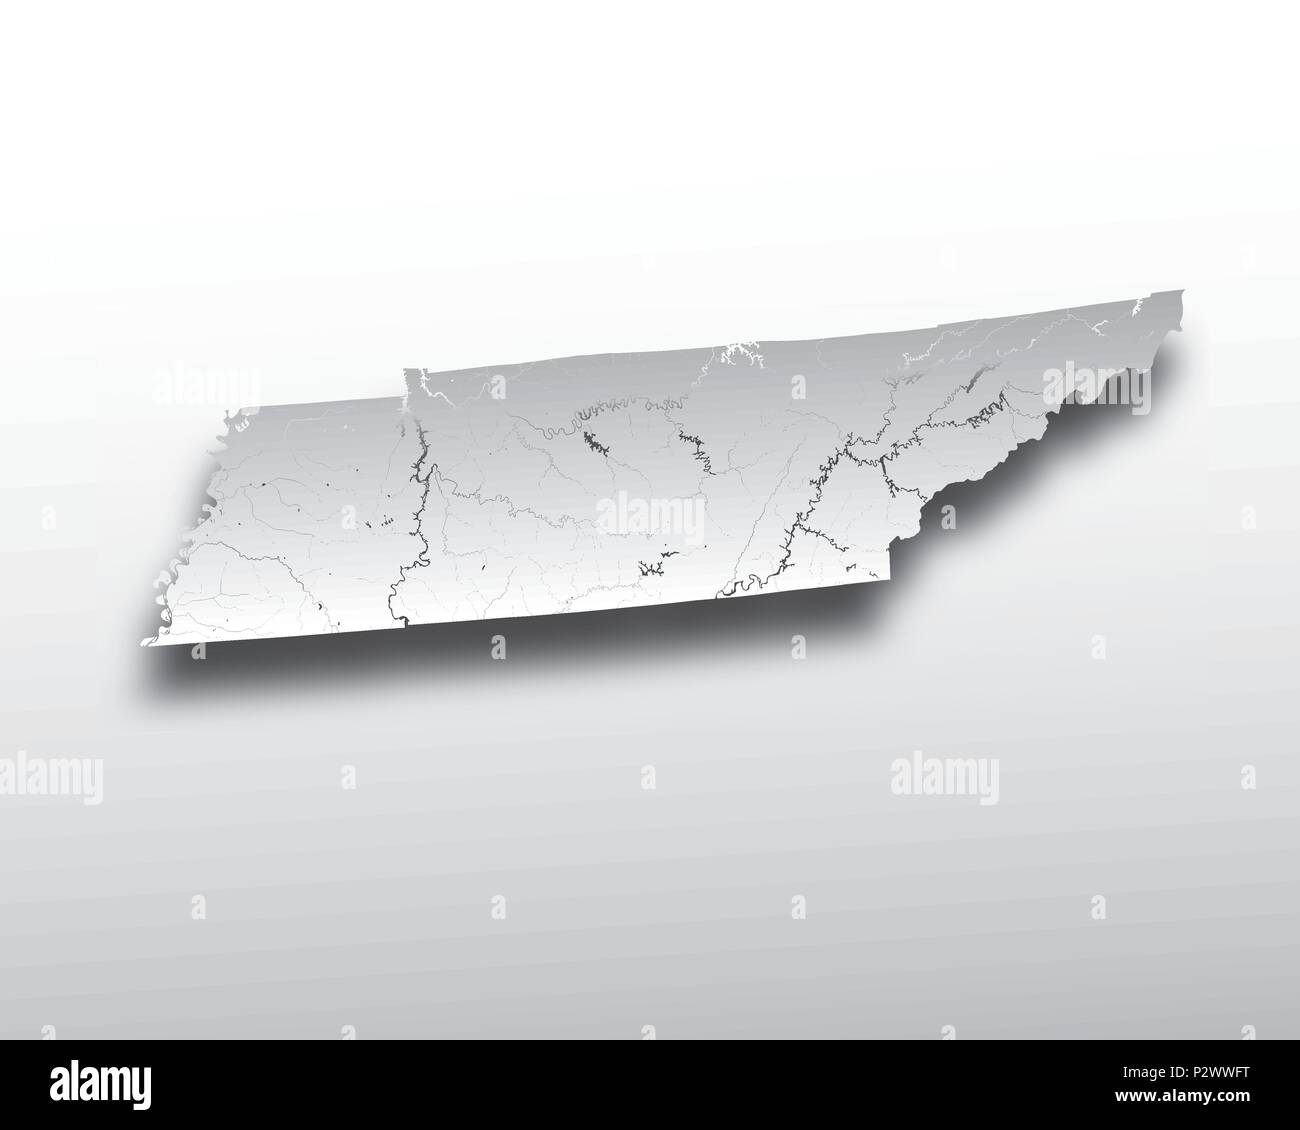 Stati Uniti - Mappa del Tennessee con carta effetto di taglio. Fatto a mano. I fiumi e i laghi sono mostrati. Si prega di guardare le mie altre immagini della serie cartografica - t Illustrazione Vettoriale